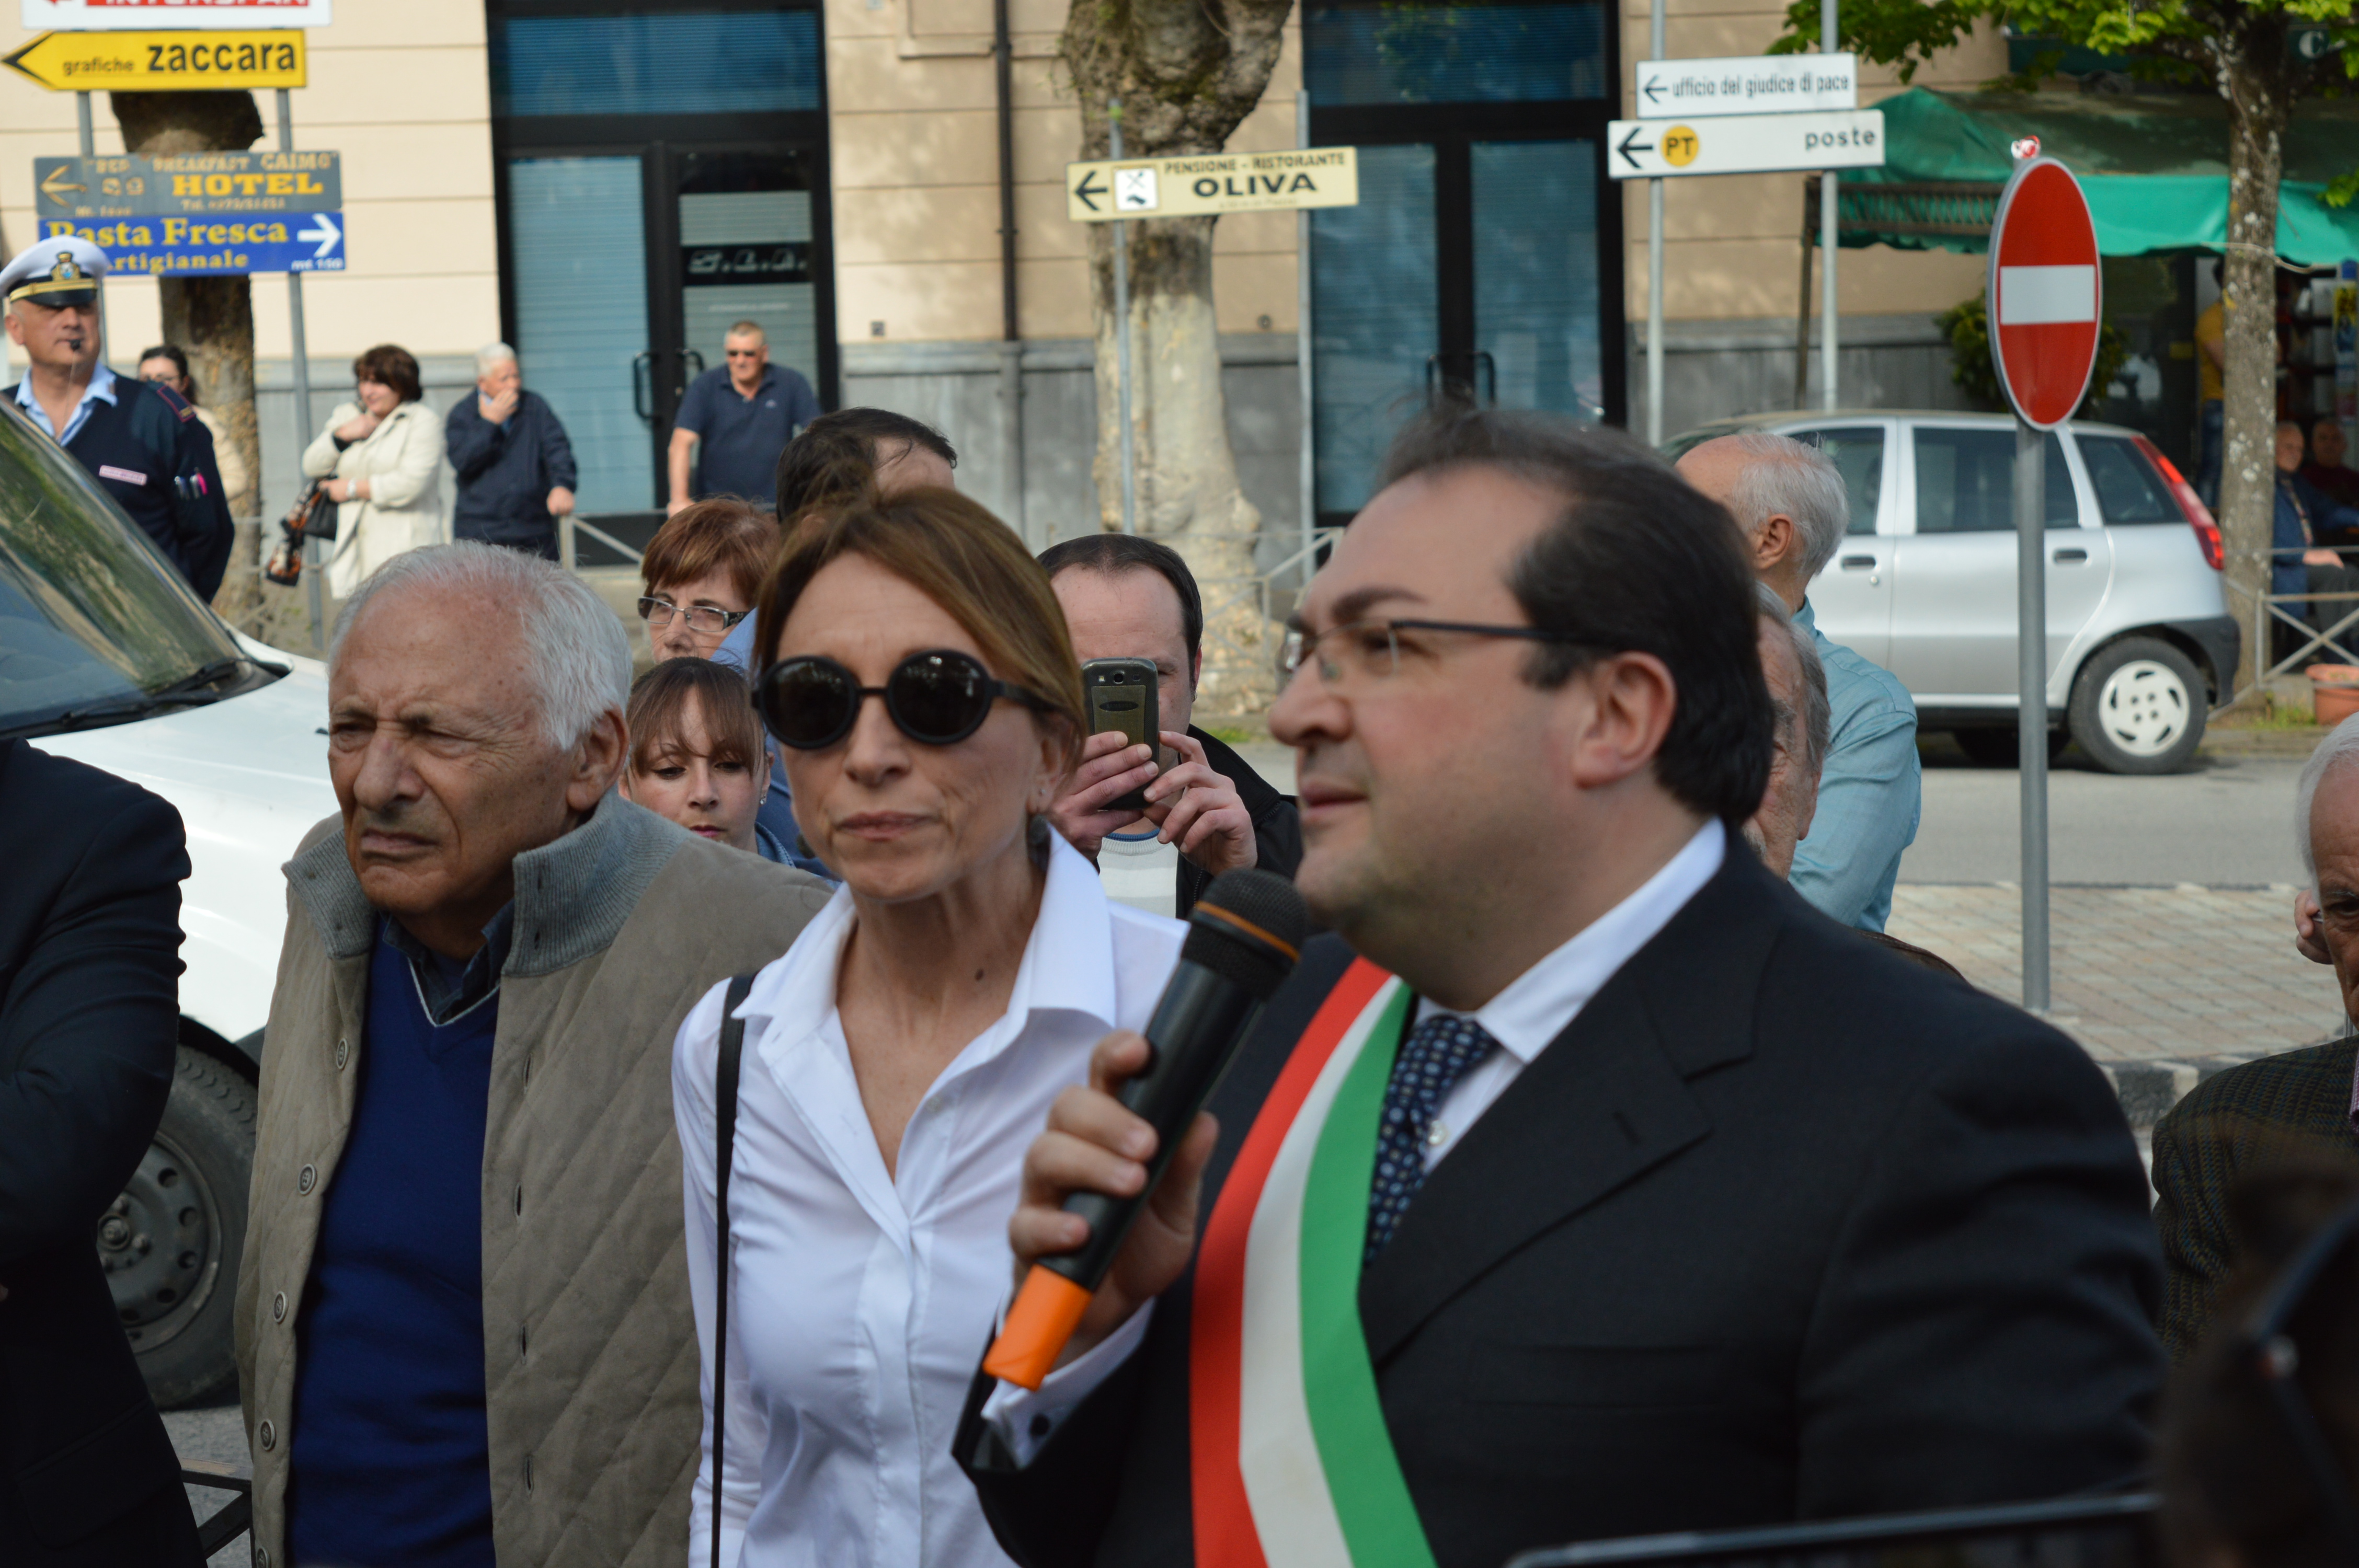  Domenico Mitidieri, Mogol, Laura Valente e il sindaco